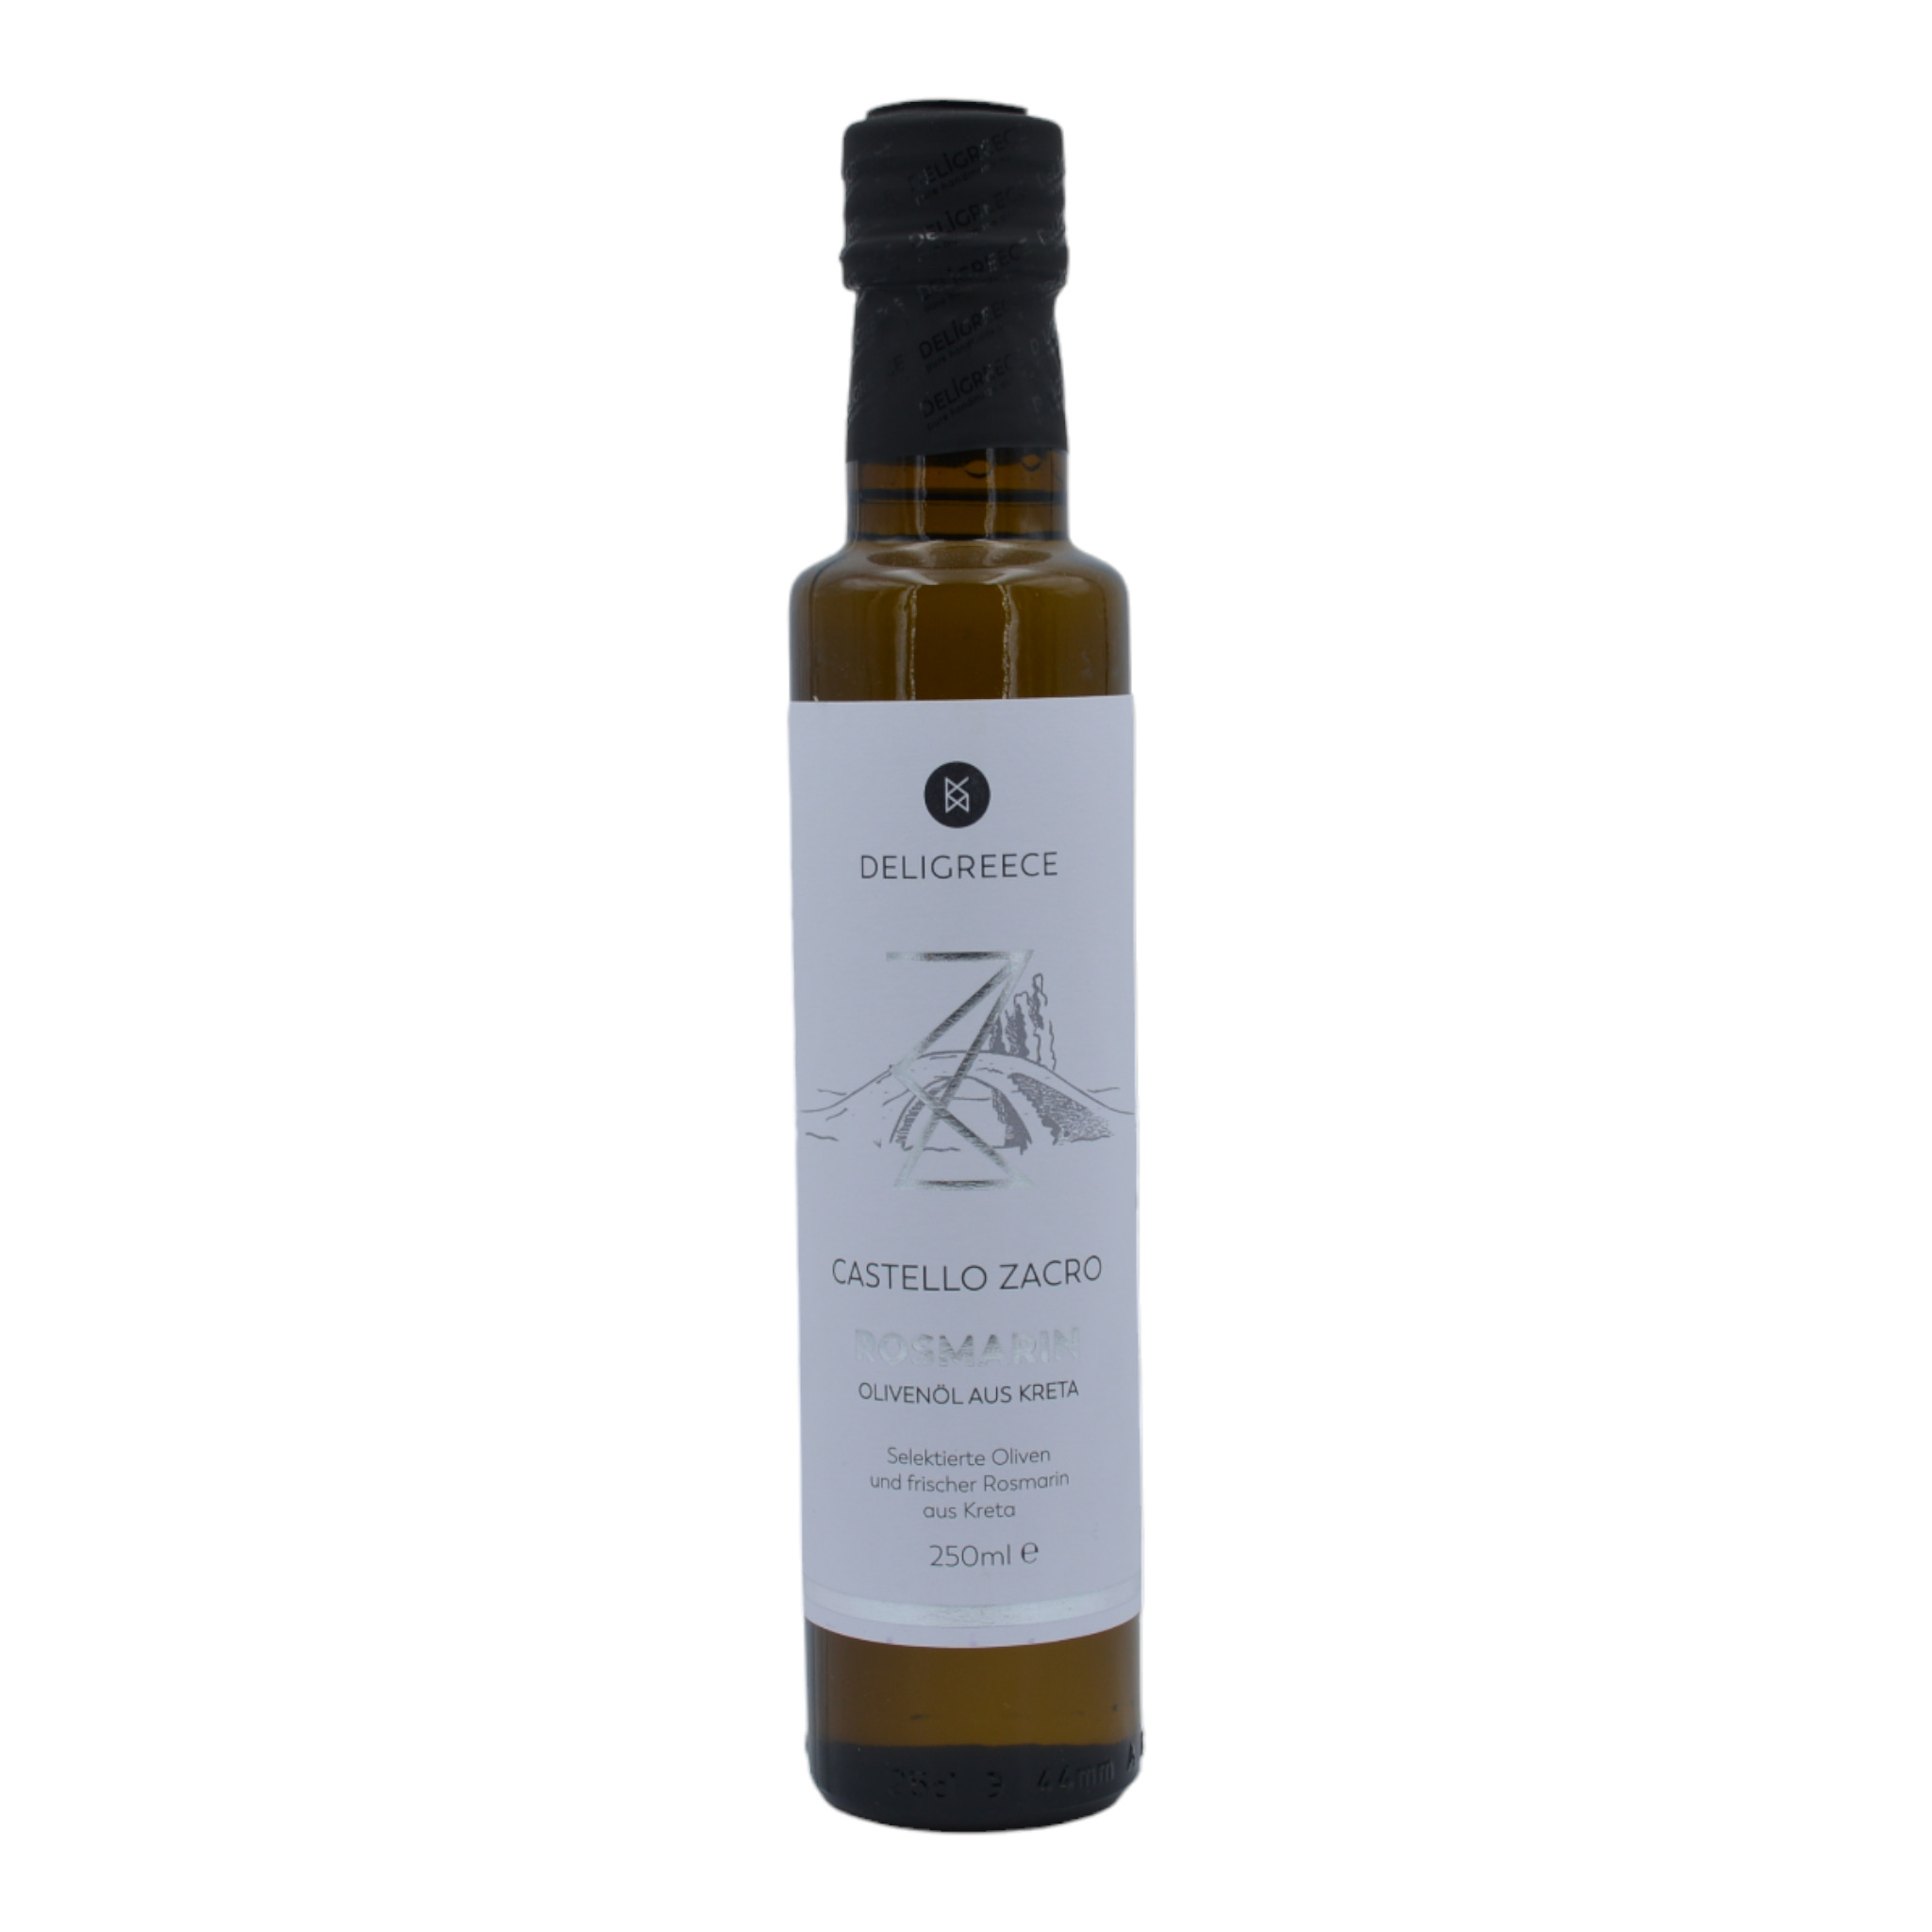 4260054323234Deligreece Castello Zacro Rosmarin Oliveöl aus Kreta f